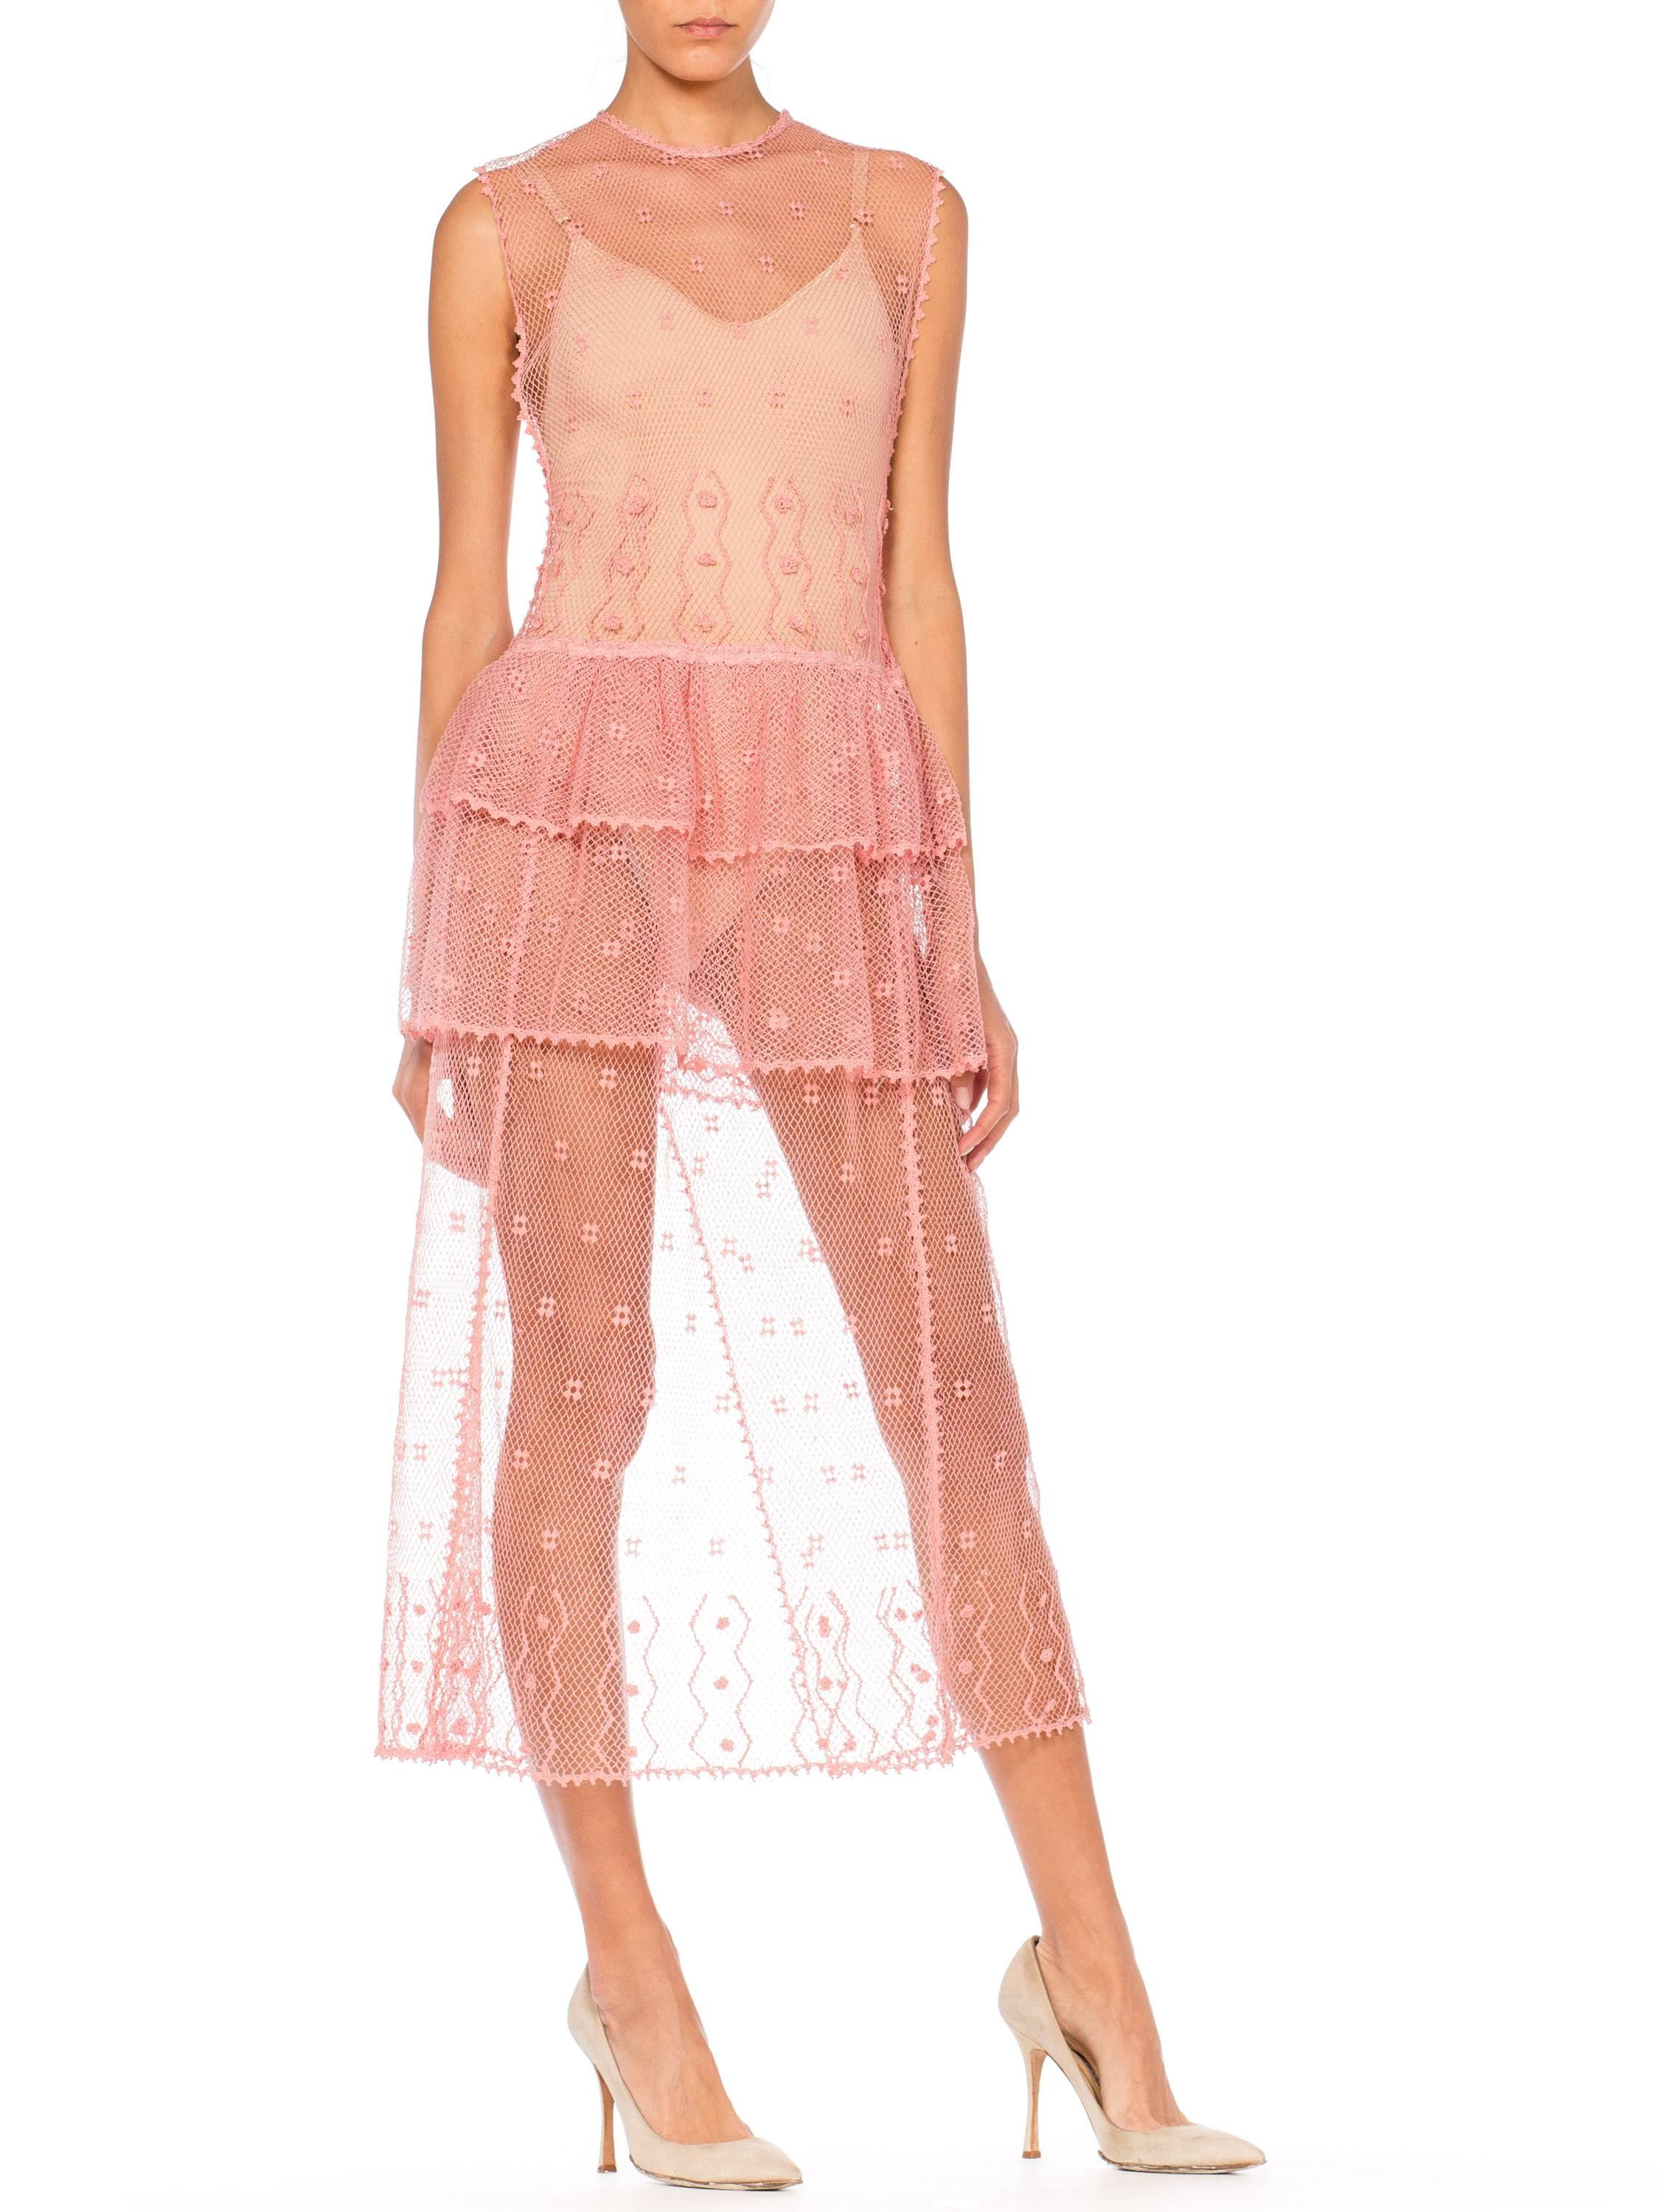 Sheer Pink Hand Crochet Cotton Net Dress, 1980s   1